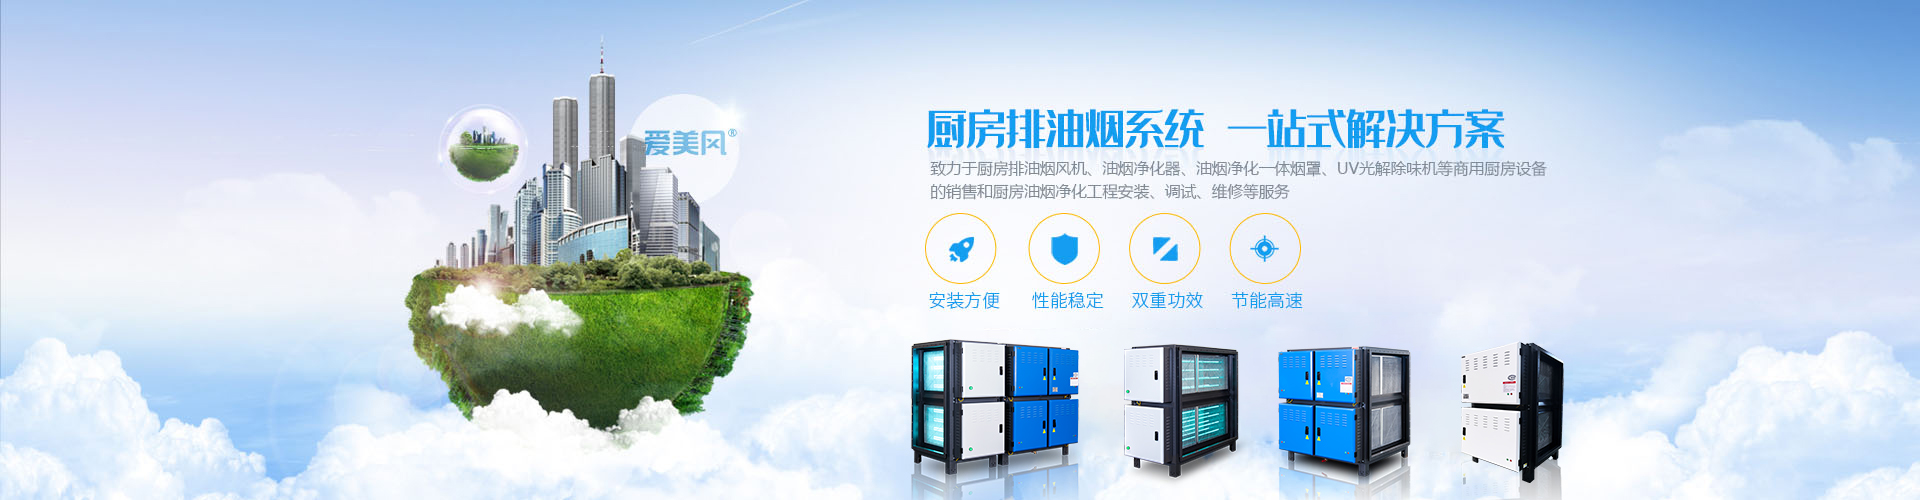 bwin·必赢(中国)唯一官方网站_产品7679